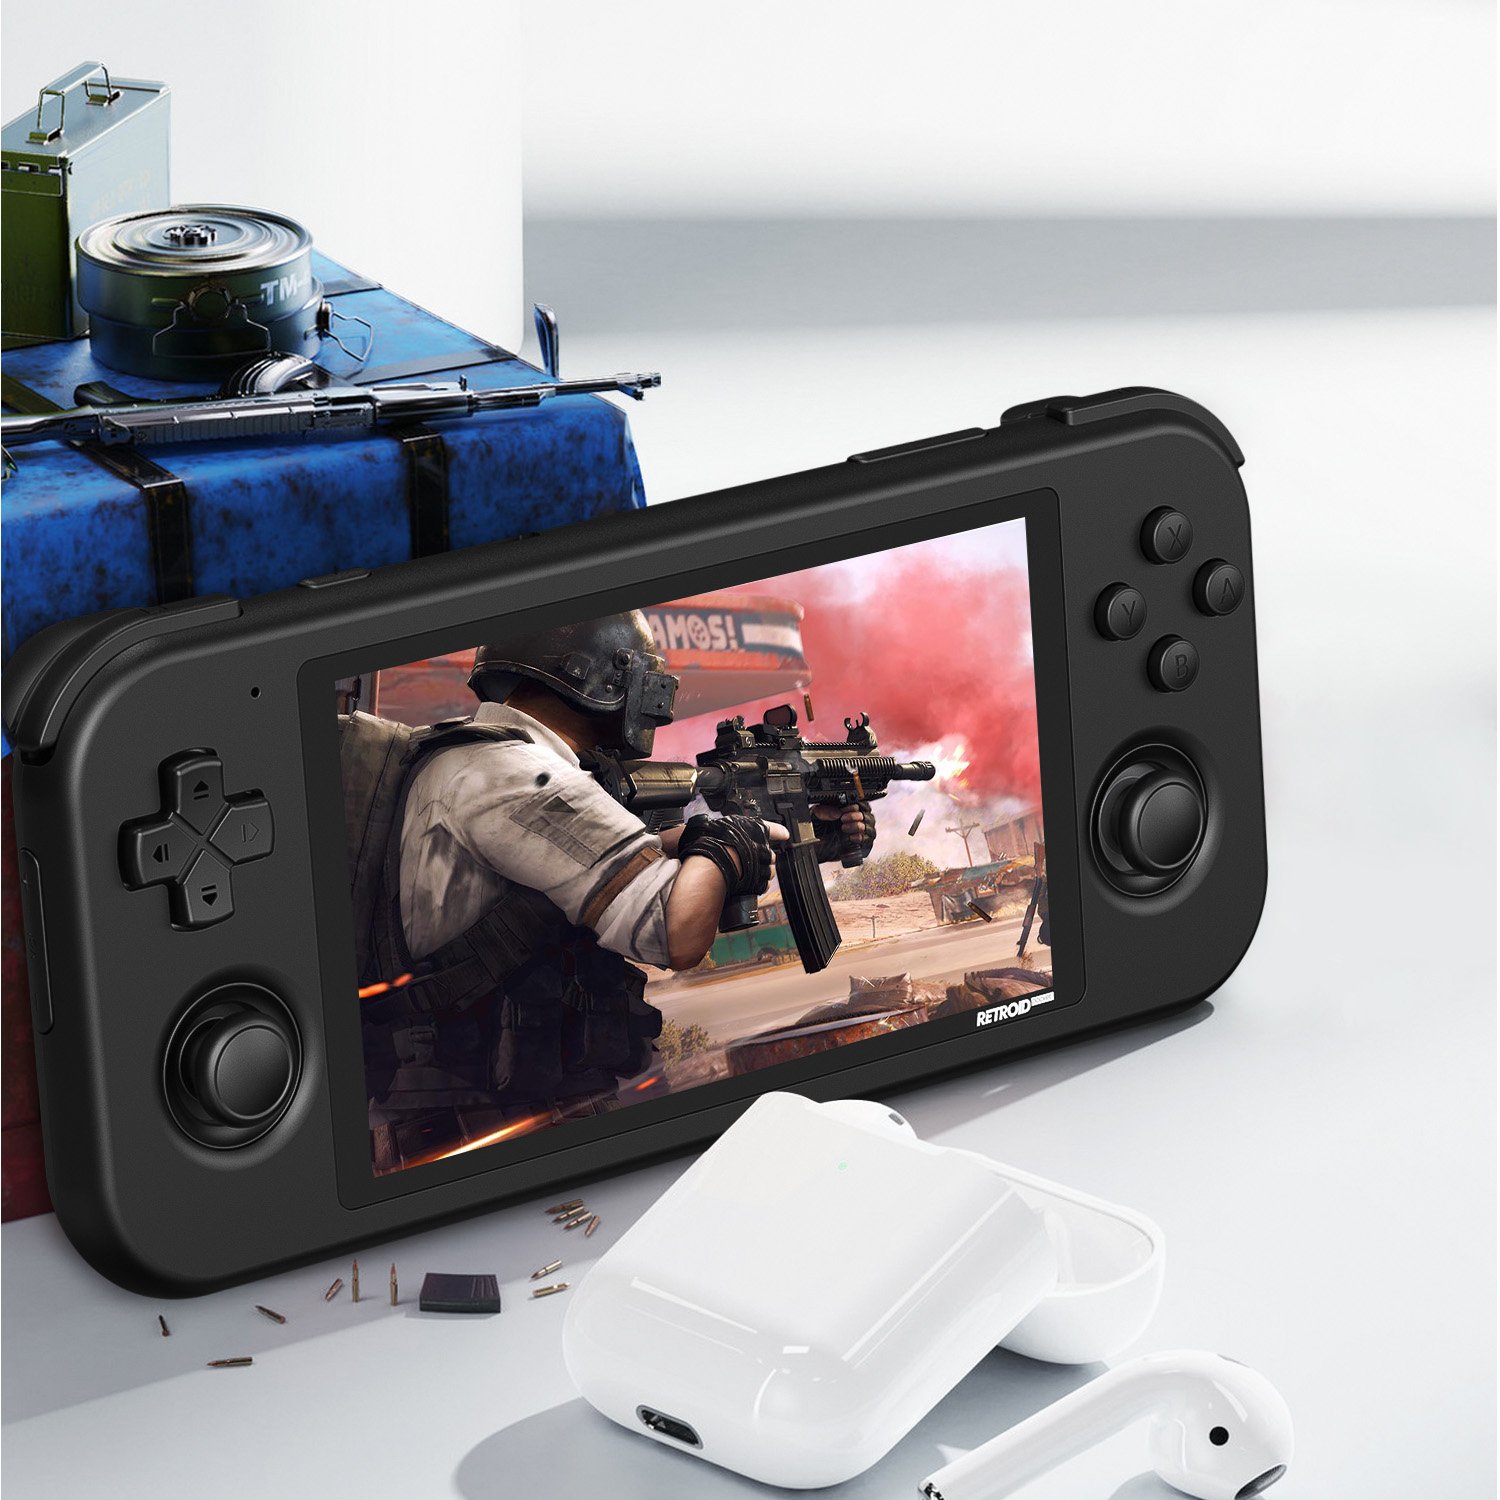 Retroid Pocket 3 Gaming Handheld